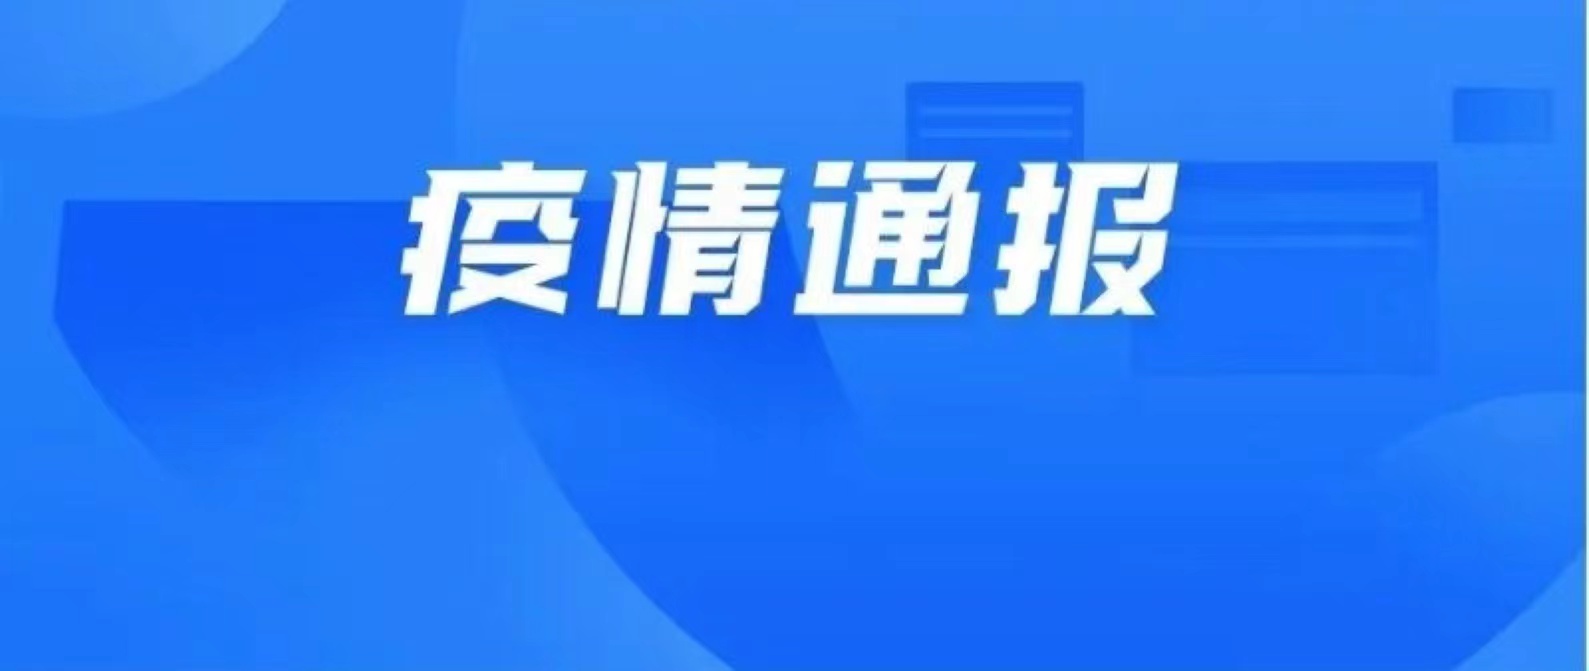 10月24日深圳新增3例确诊病例和1例无症状感染者